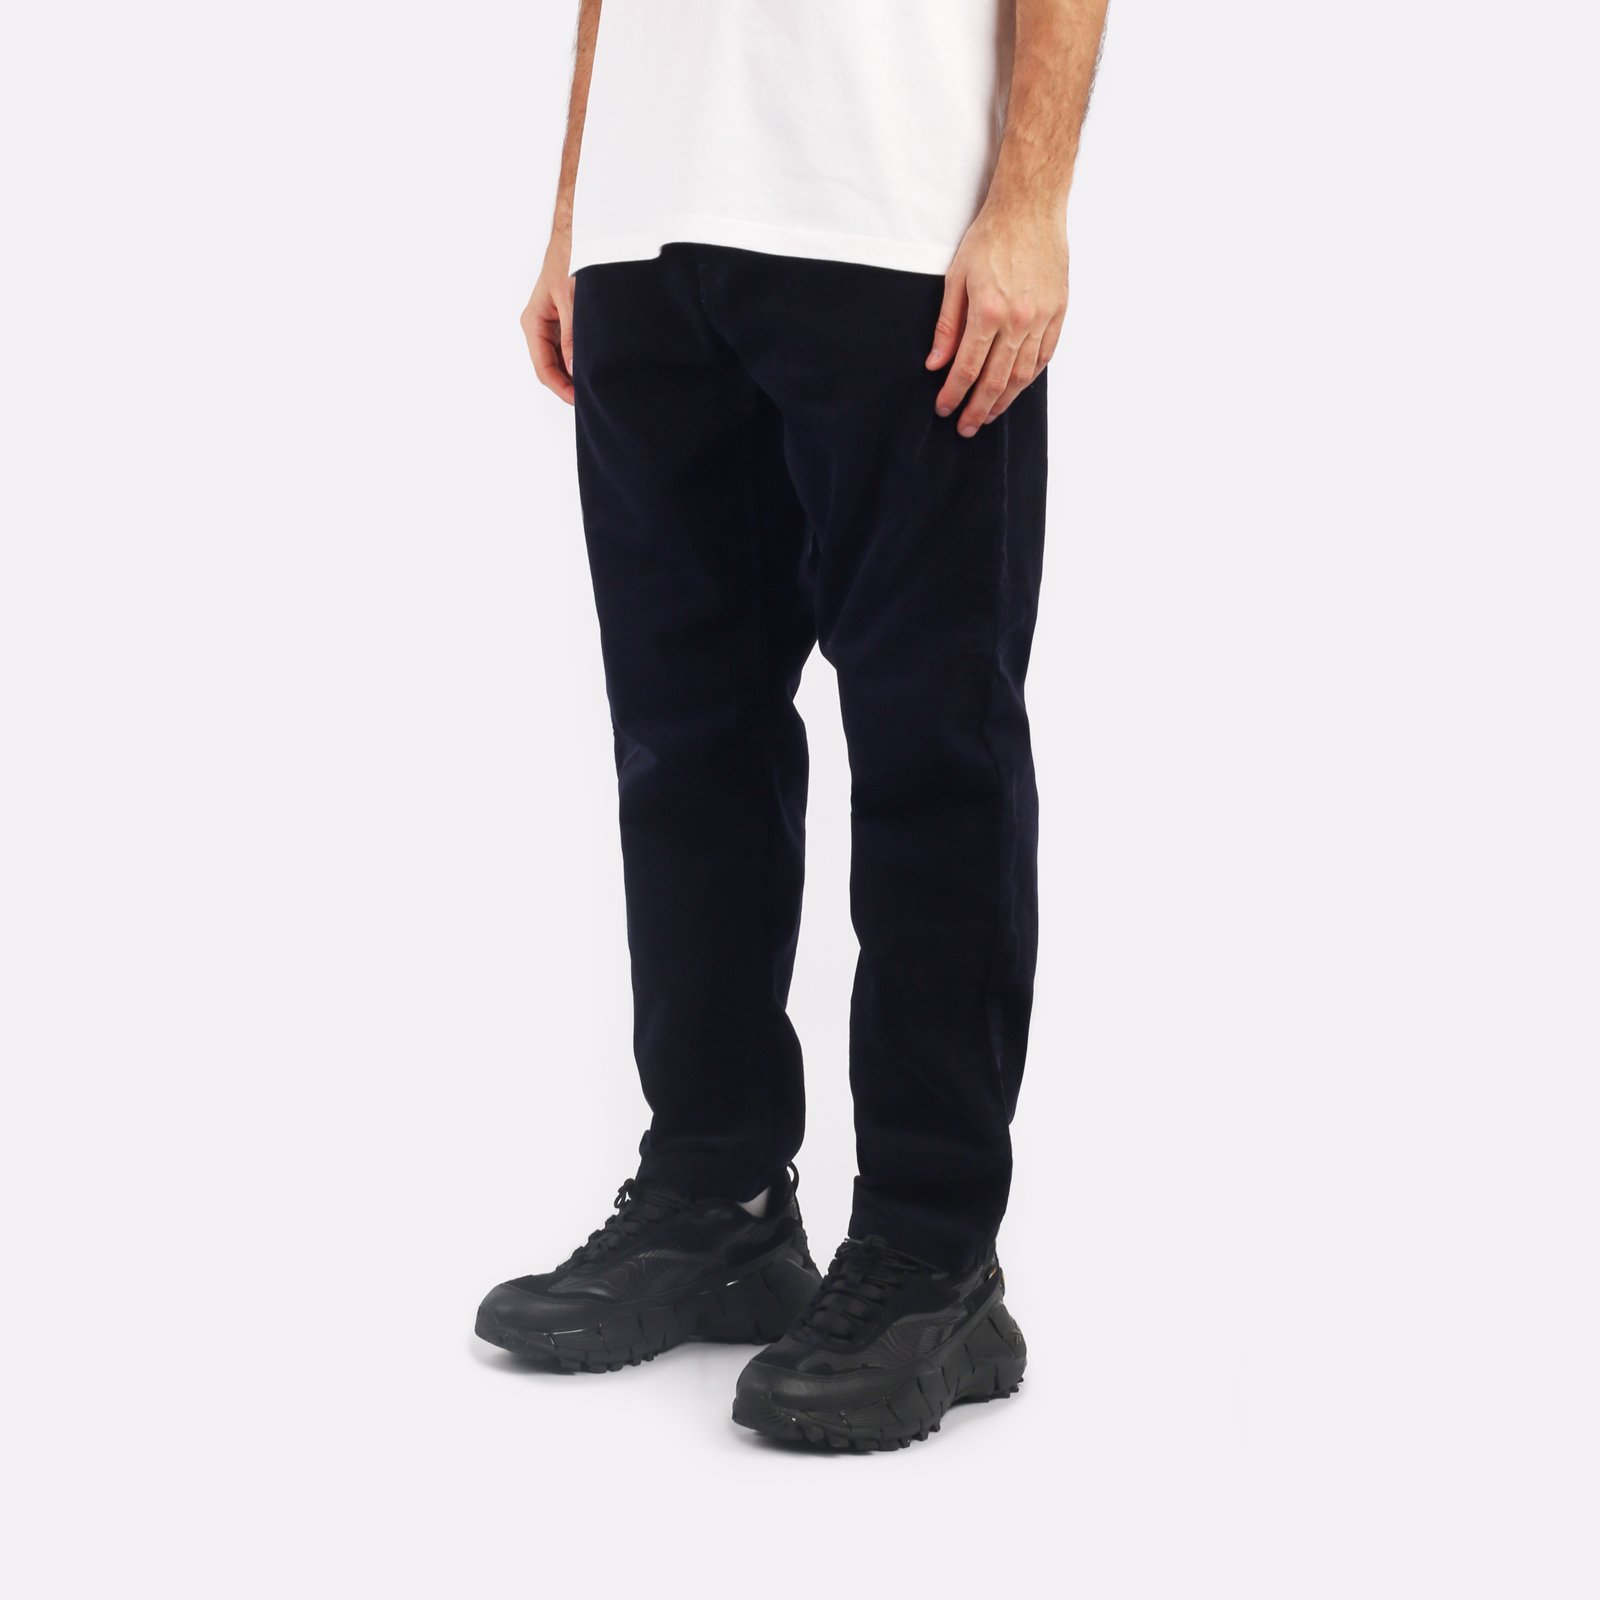 мужские брюки Carhartt WIP Newel Pant  (I031456-dark_navy)  - цена, описание, фото 3